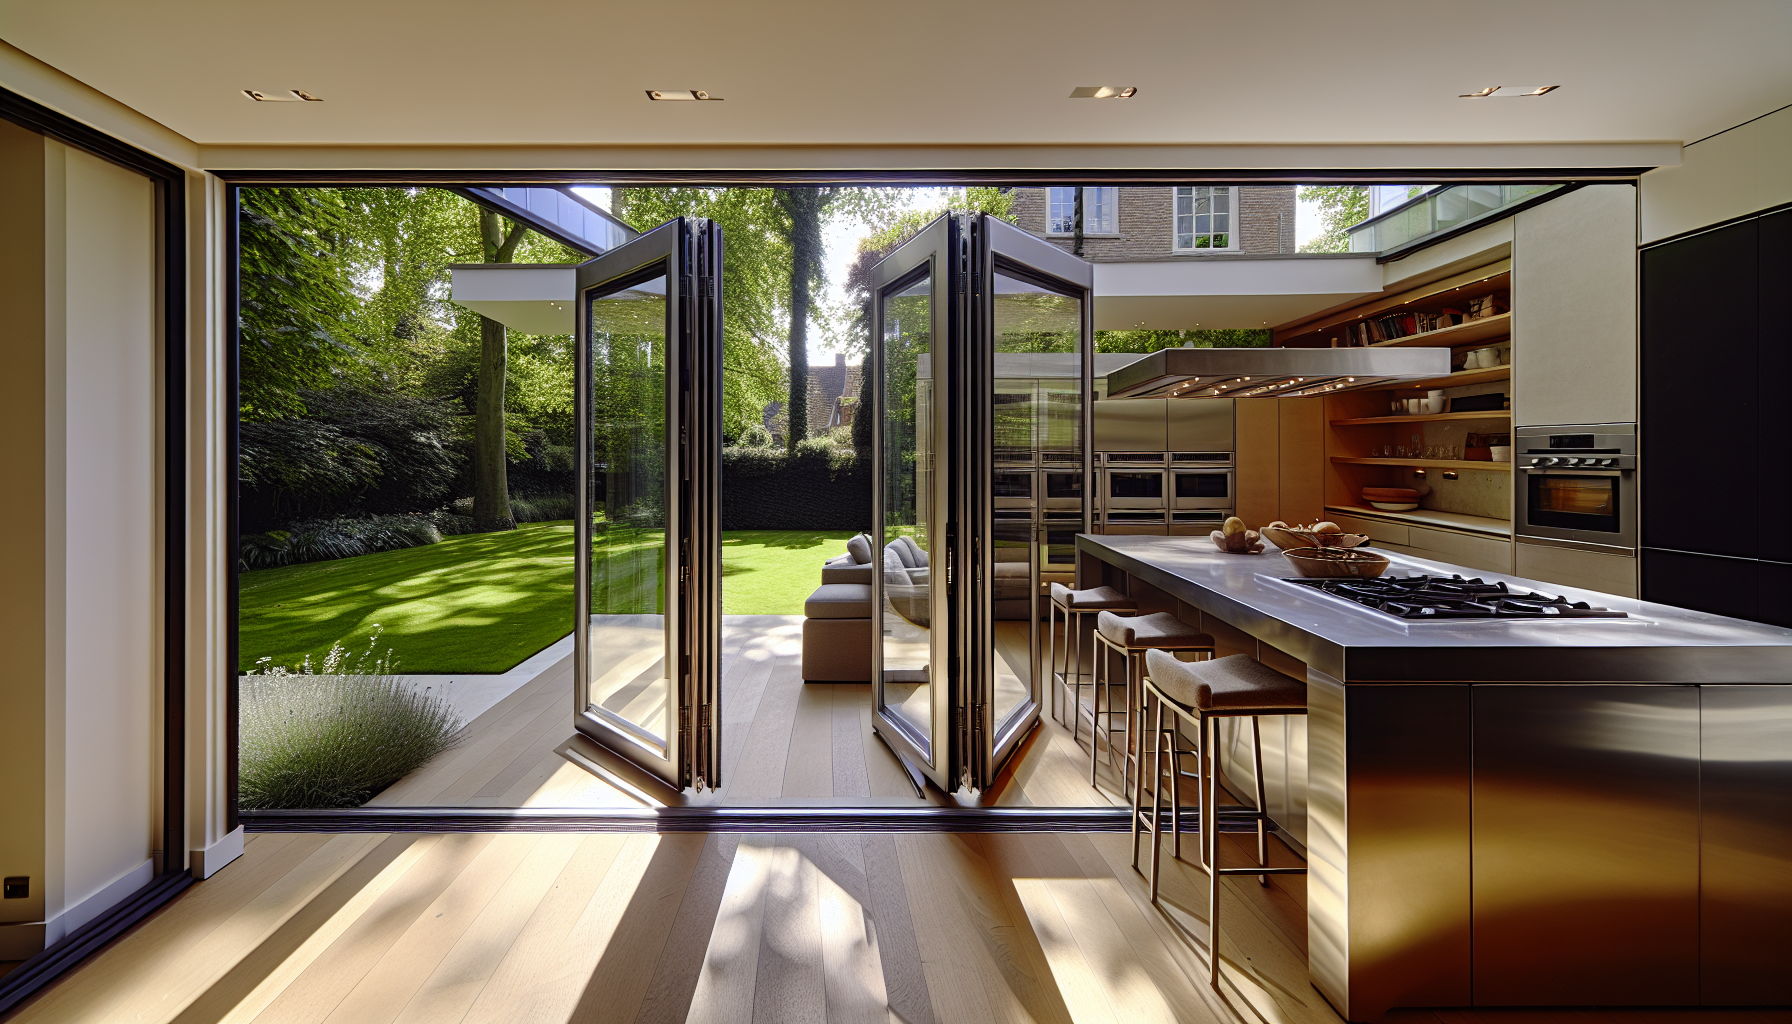 Seamless indoor-outdoor connection in luxury modern kitchen design